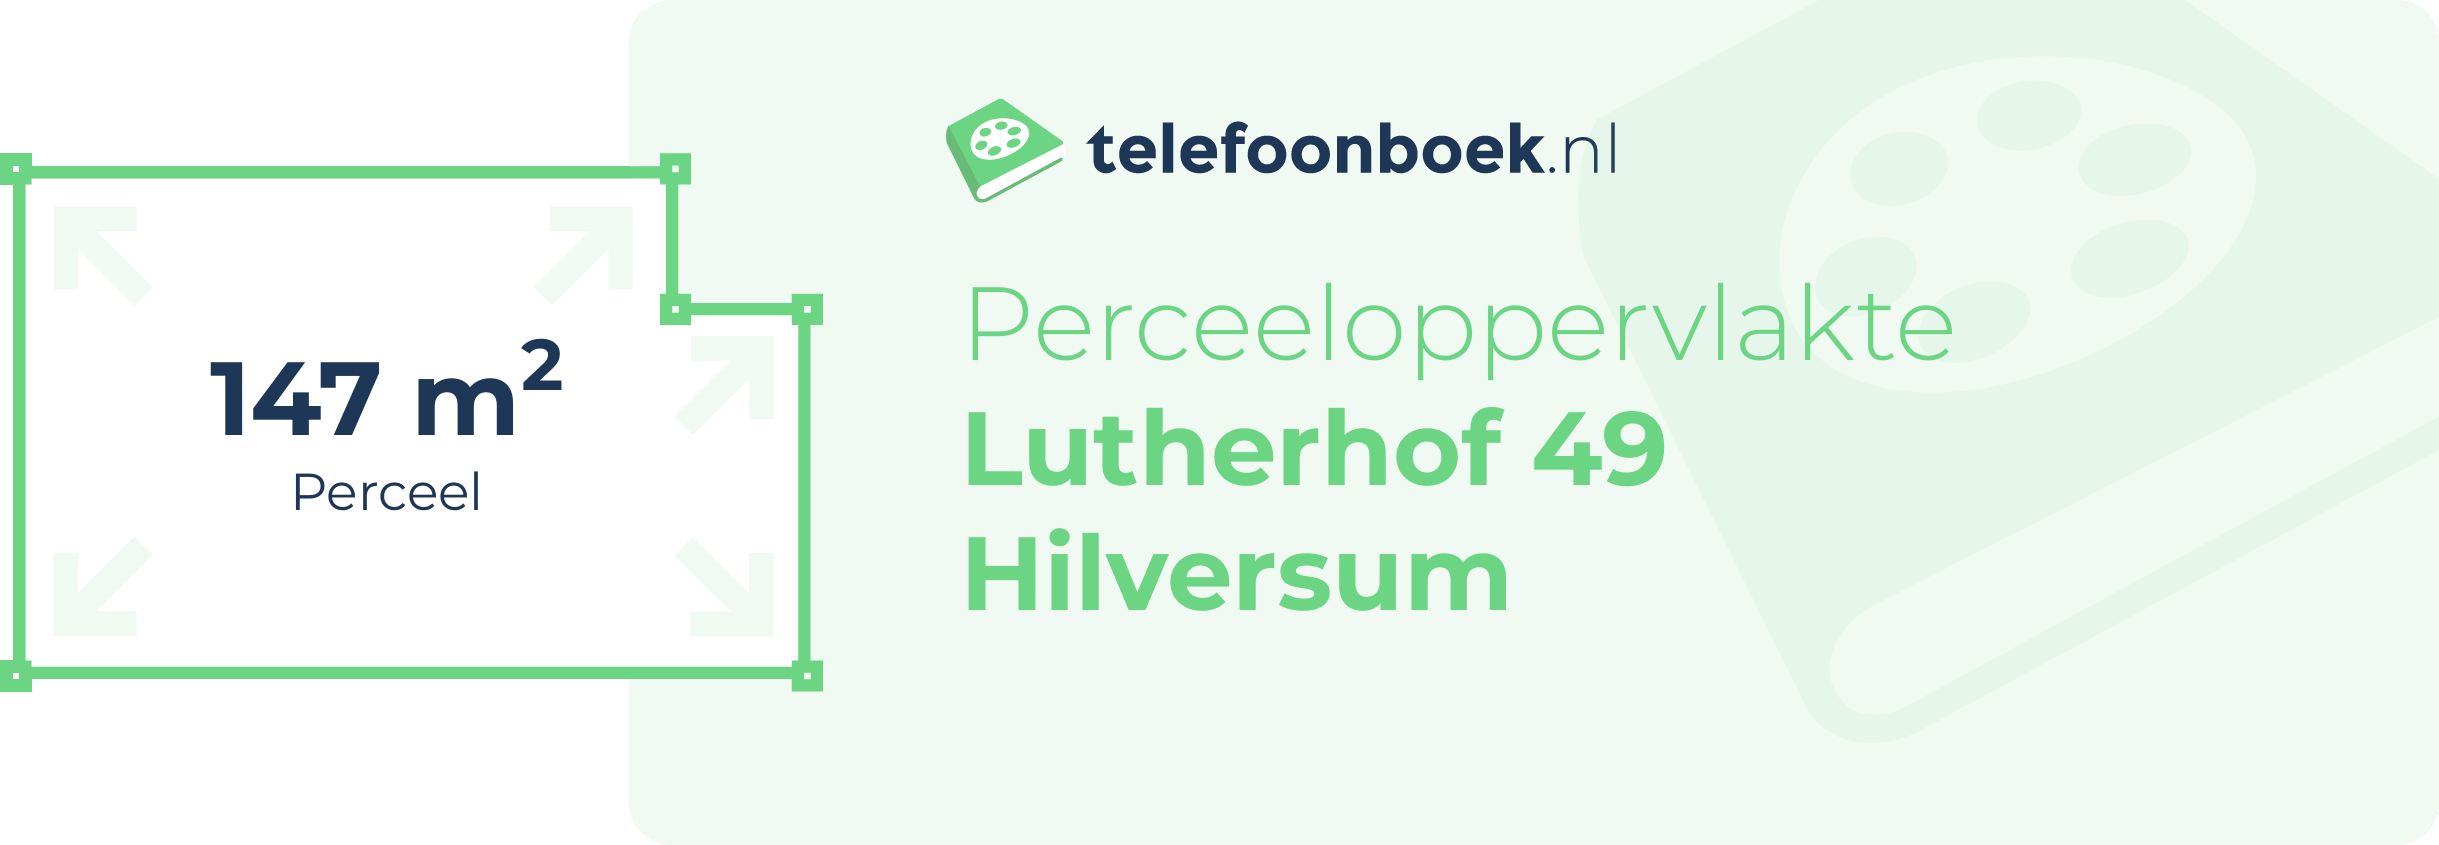 Perceeloppervlakte Lutherhof 49 Hilversum